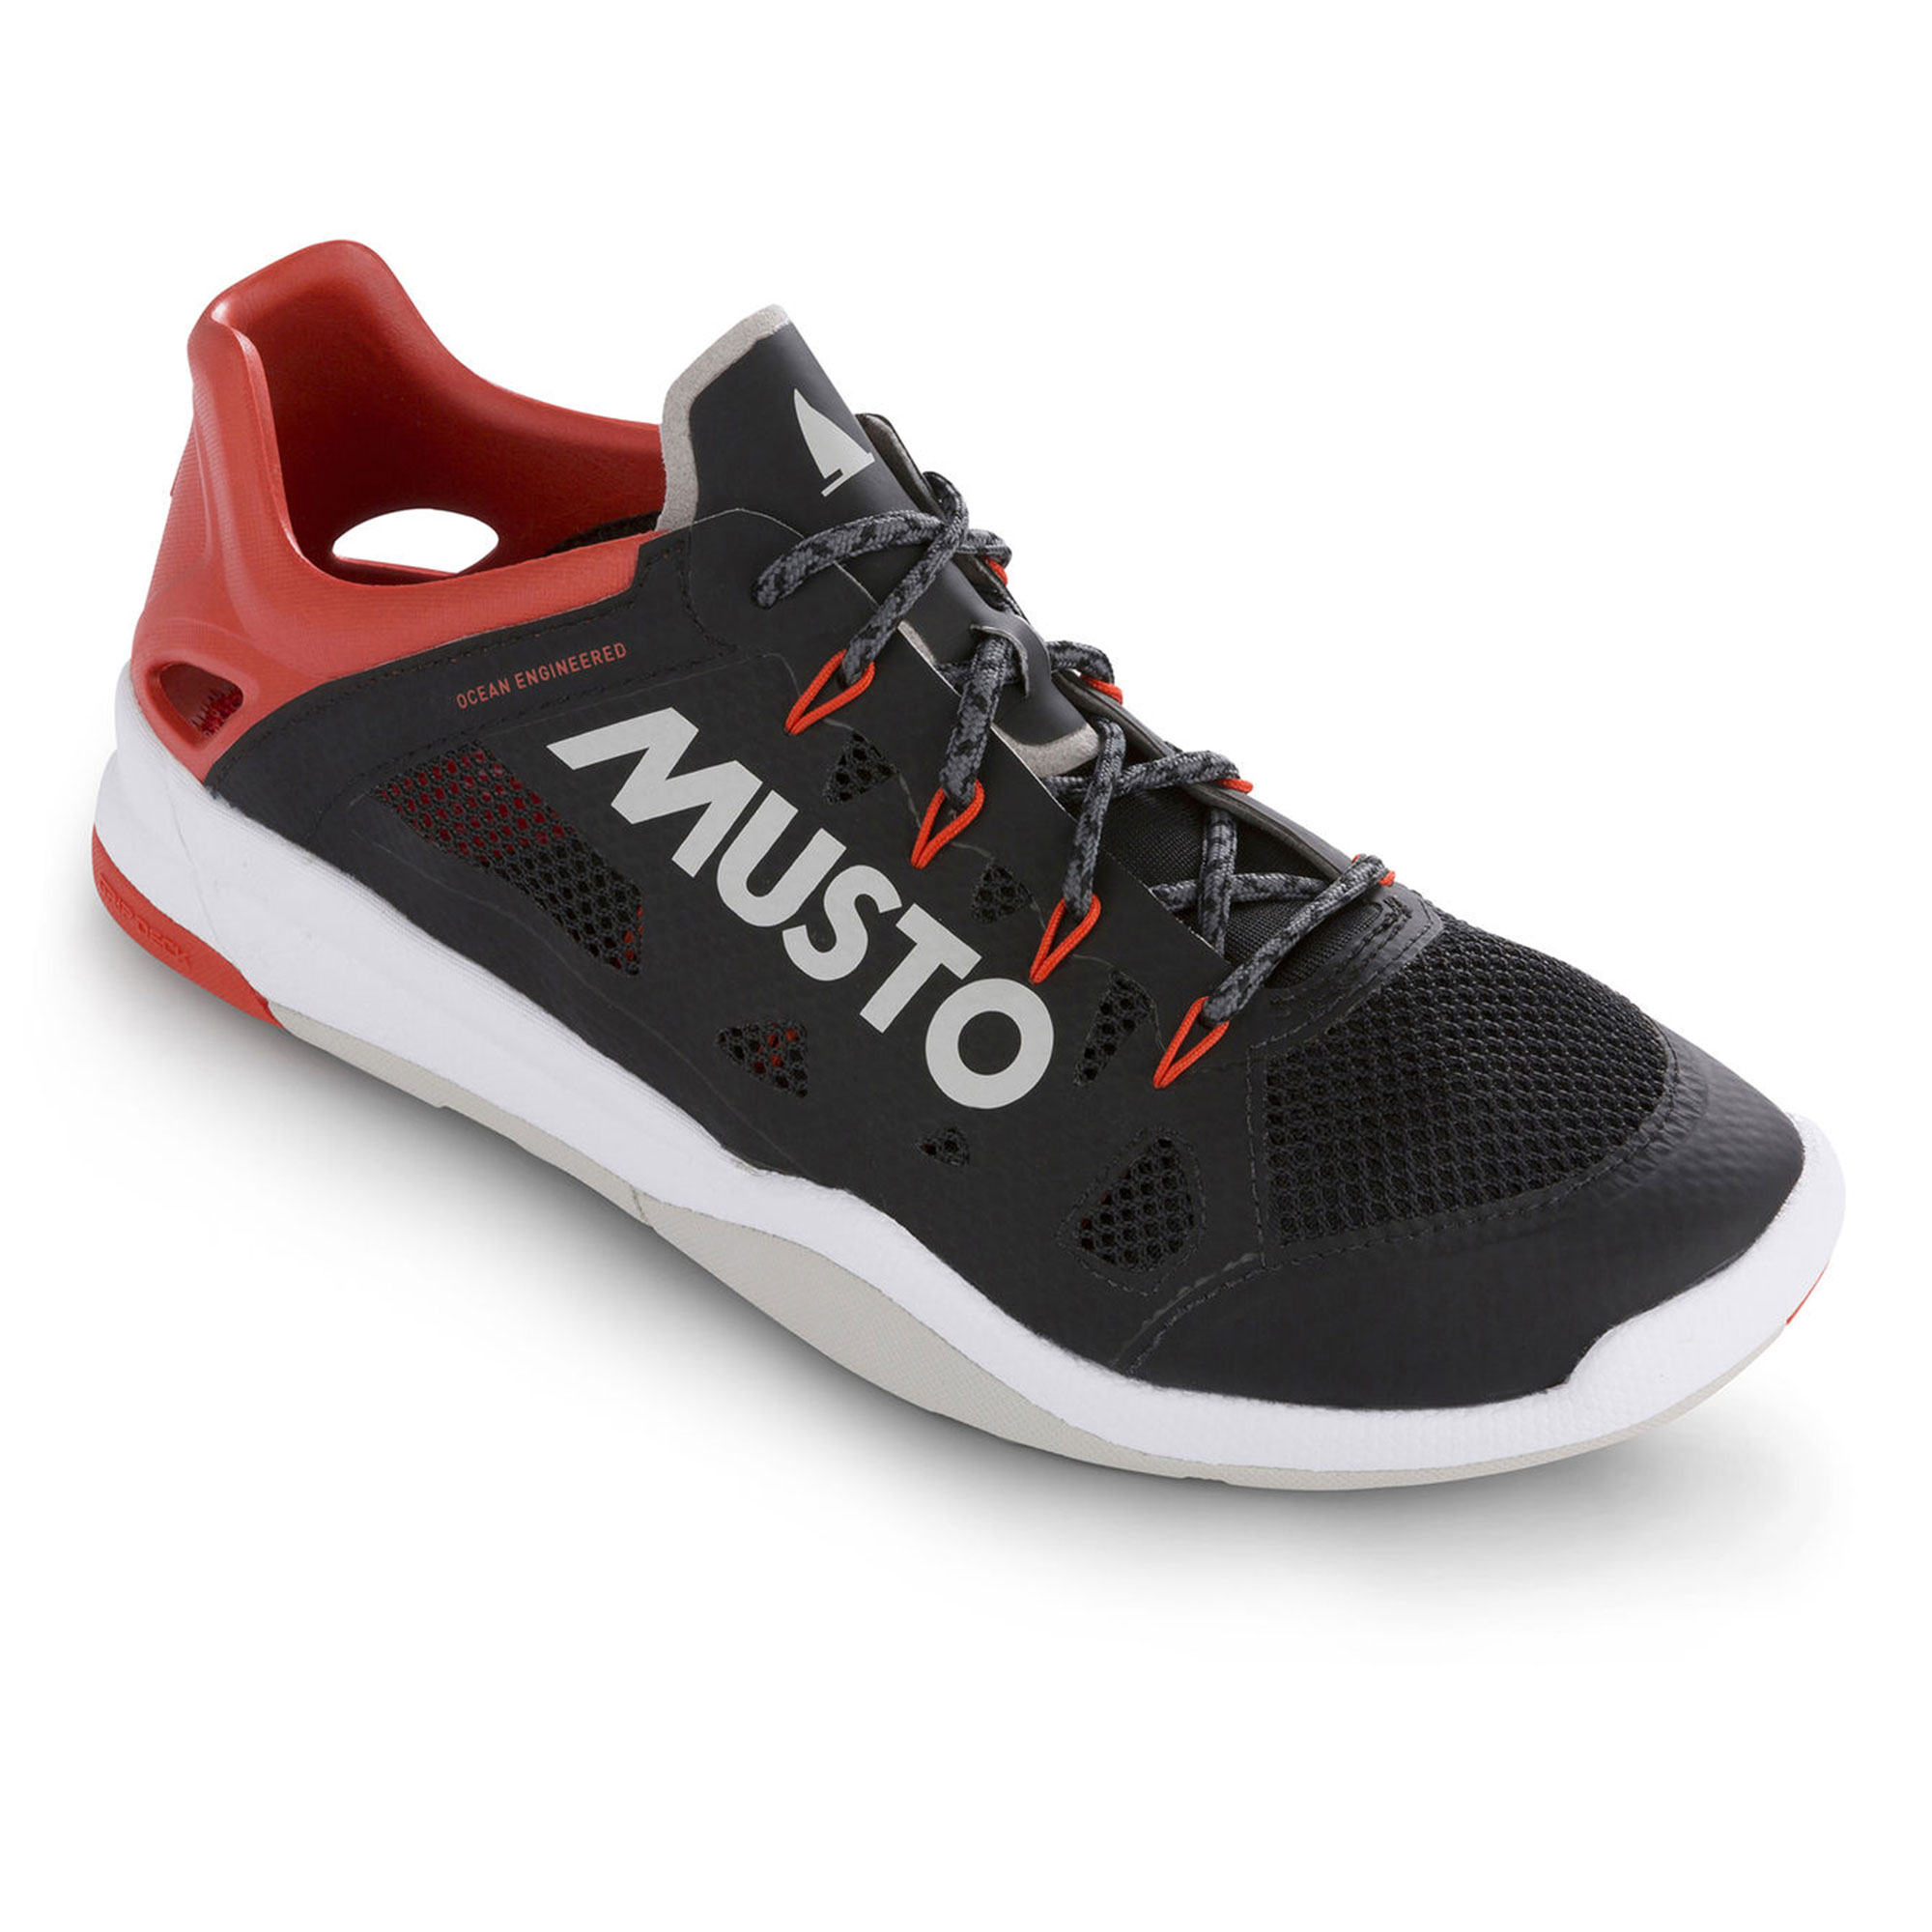 Musto Dynamic Pro II Shoe 2018 - Black Coast Water Sports